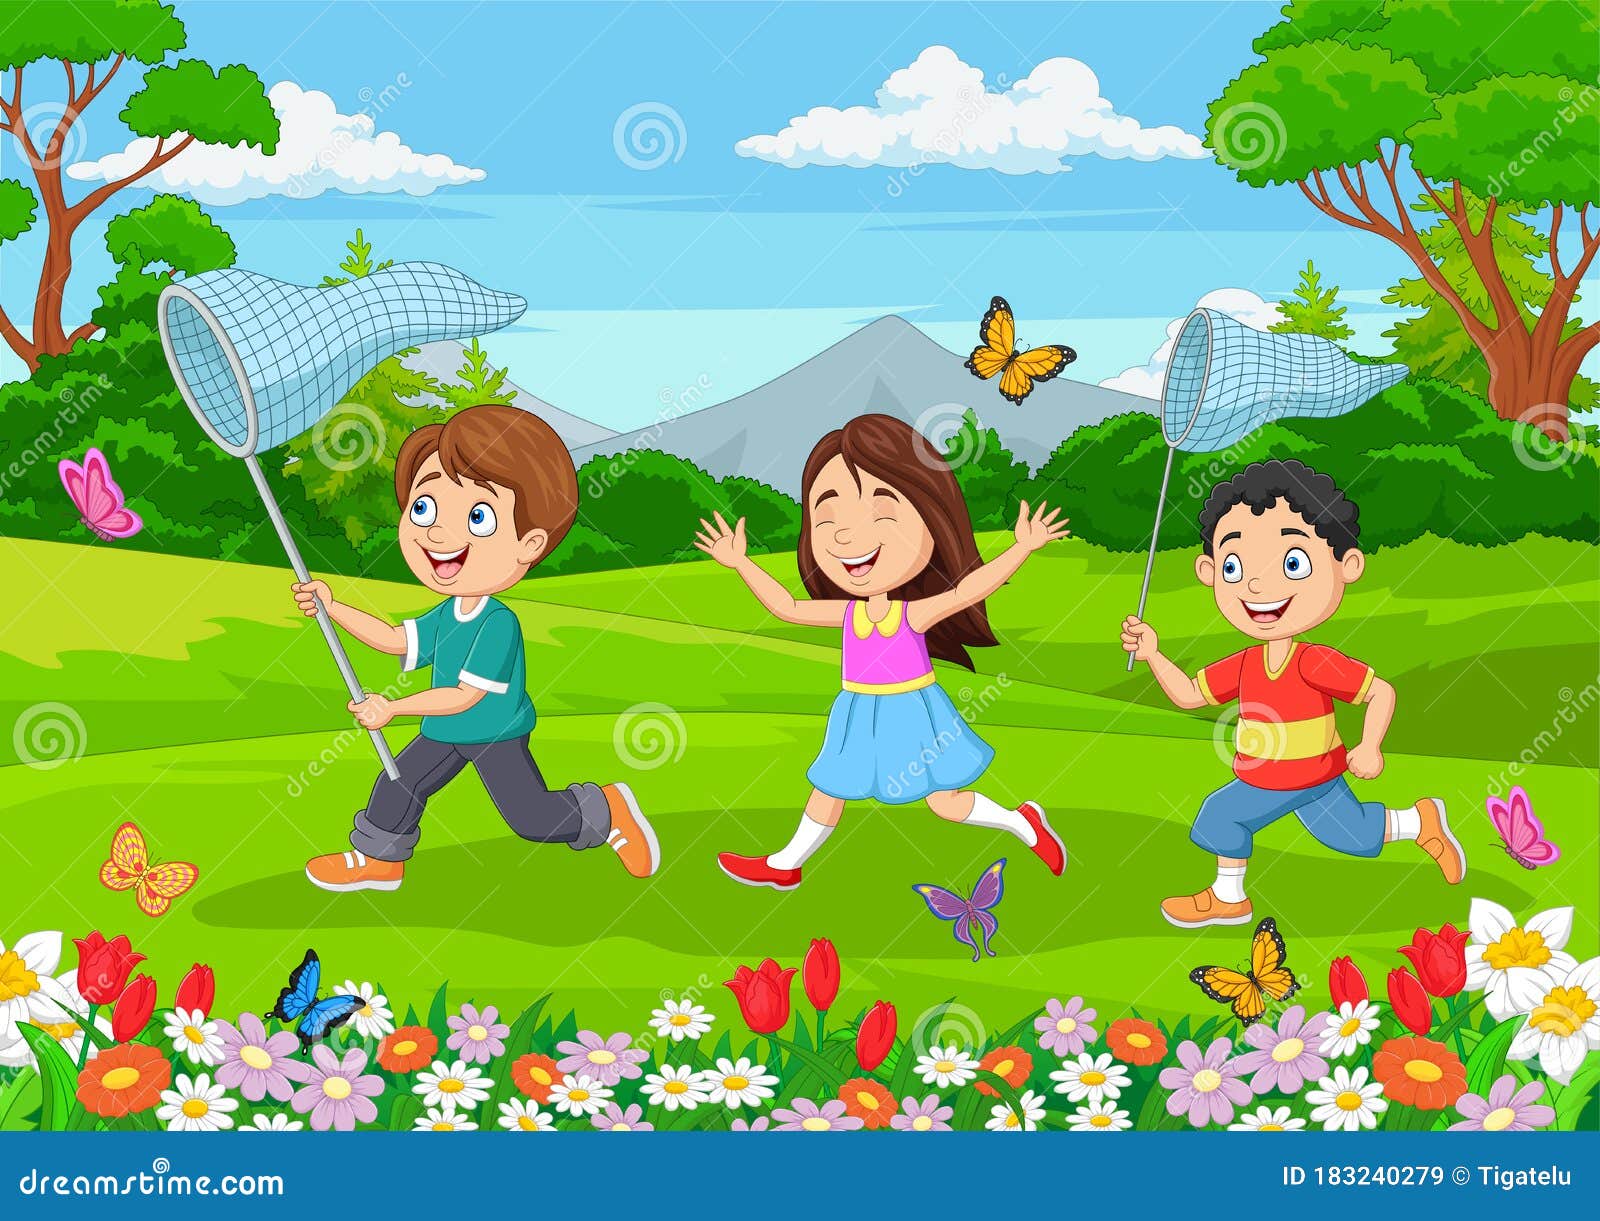 可爱的孩子在网里抓蝴蝶。女孩在大自然中捕捉虫子。有趣的童年矢量插图。在操场或公园玩的时间。在鲜花簇拥的草丛中微笑的孩子设计元素图片_ID ...